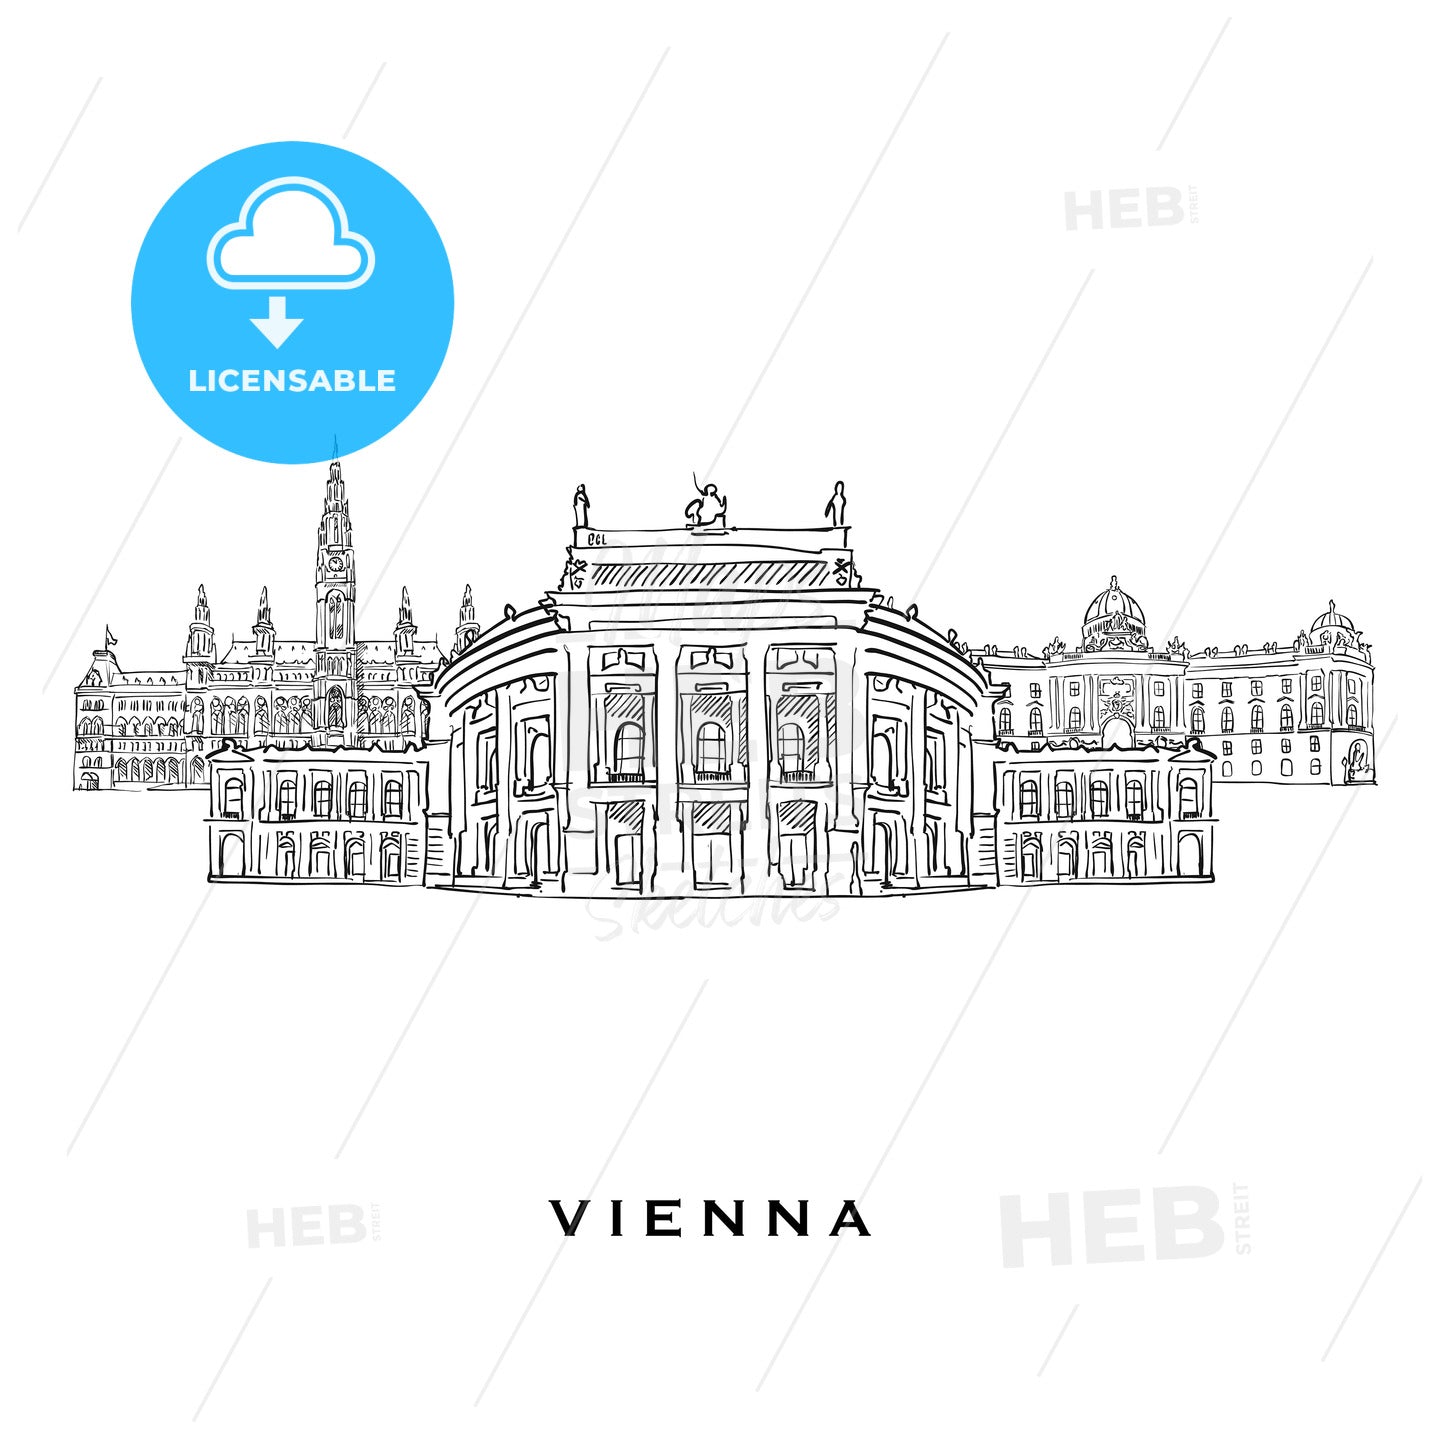 Vienna Austria famous architecture – instant download